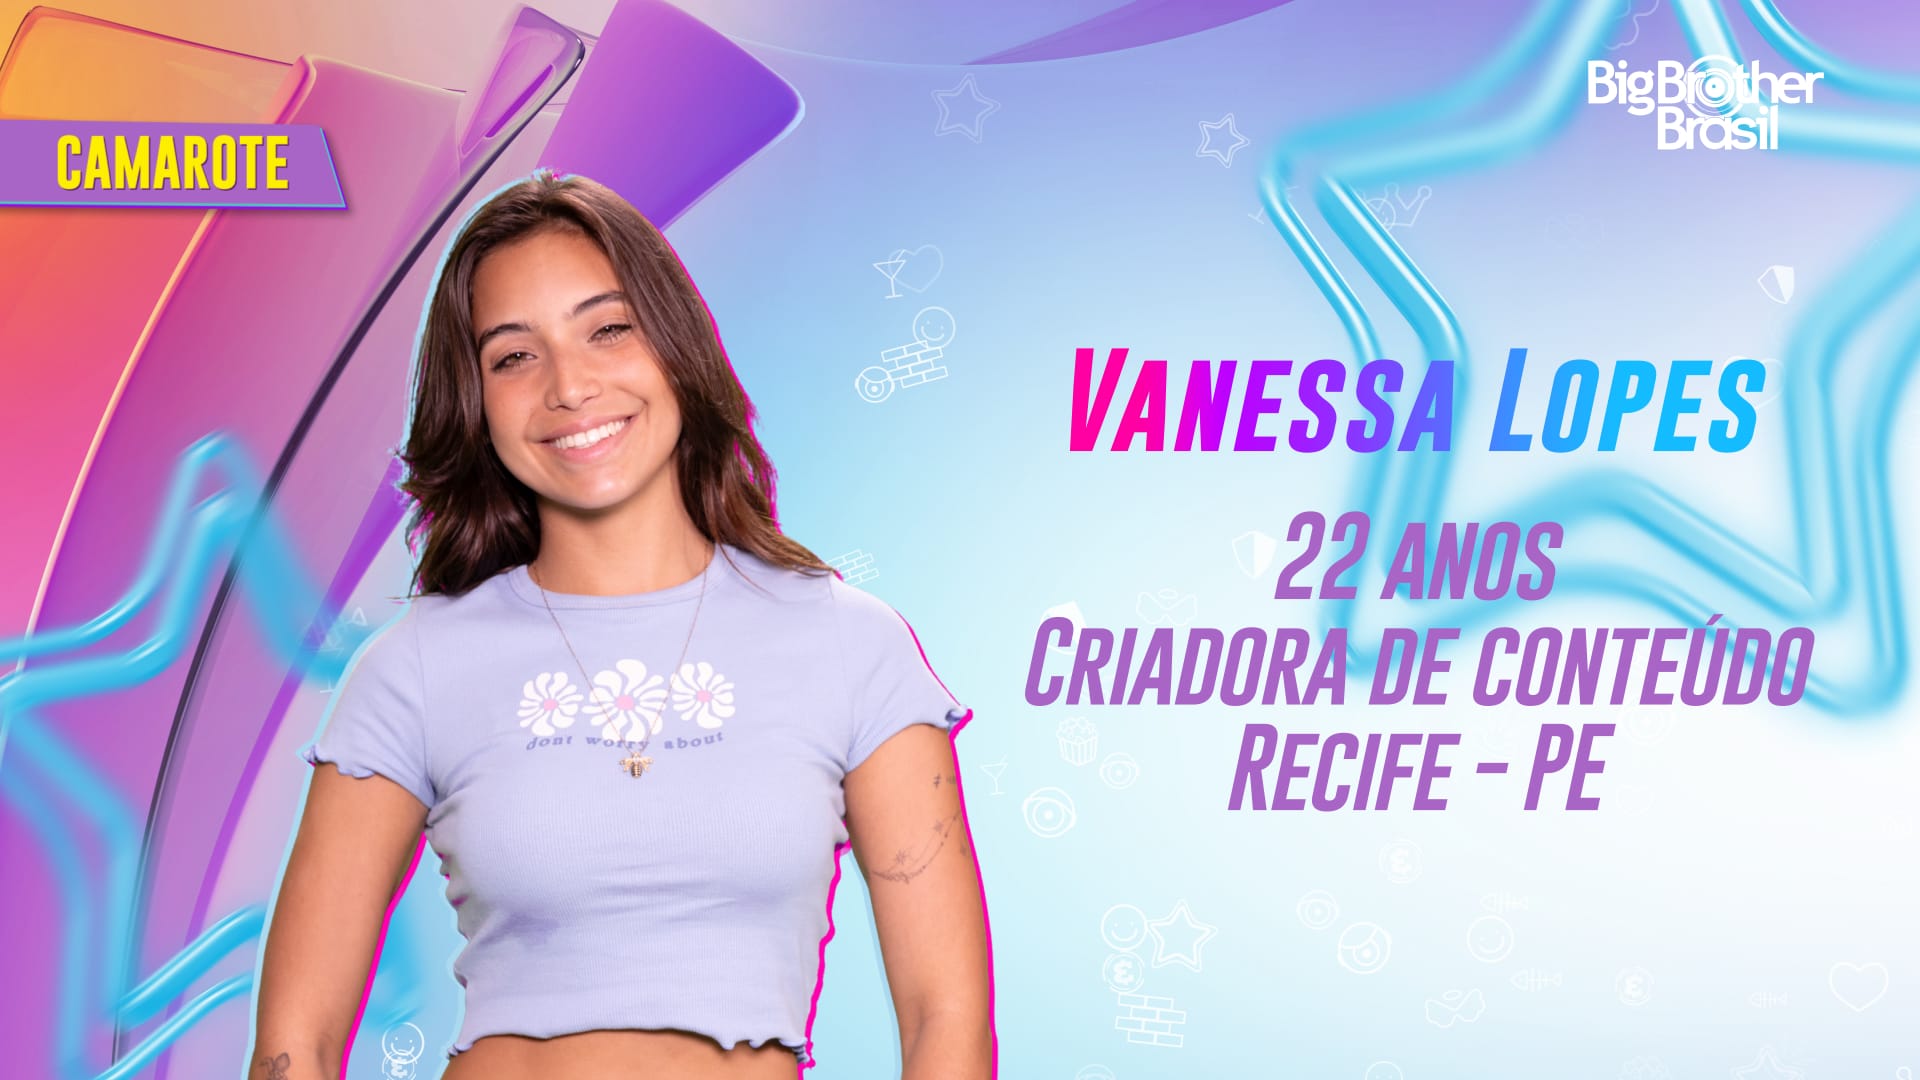 Camarote - Vanessa Lopes - 1